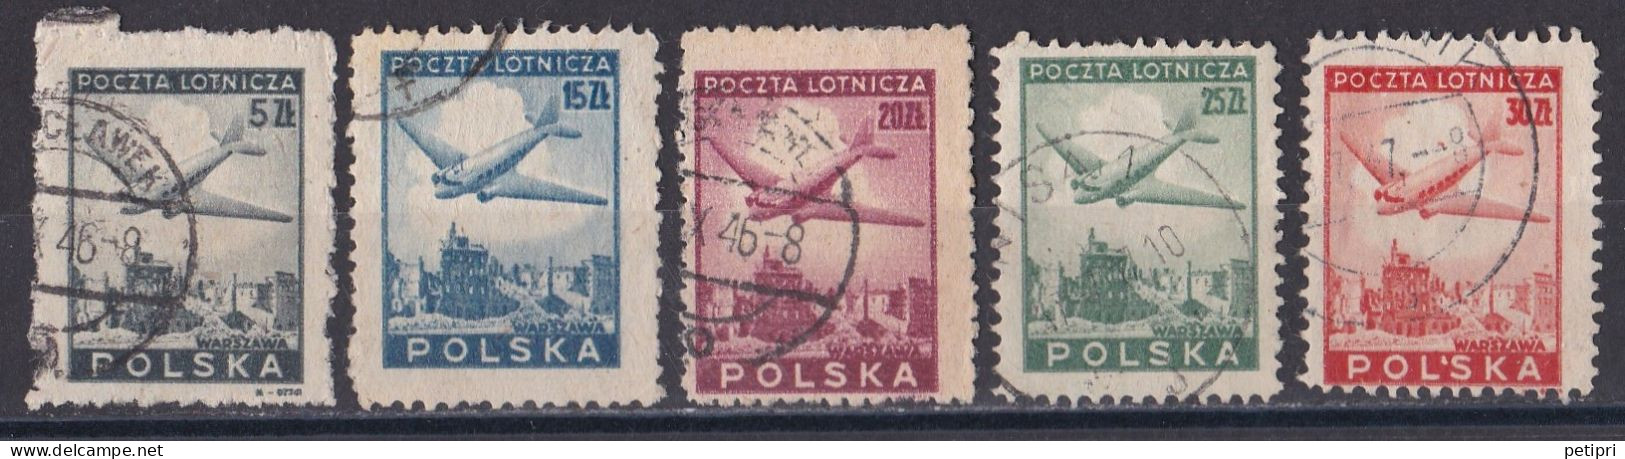 Pologne -  Poste Aérienne  Y&T  N ° 10  12  13  14  15  Oblitérés - Used Stamps